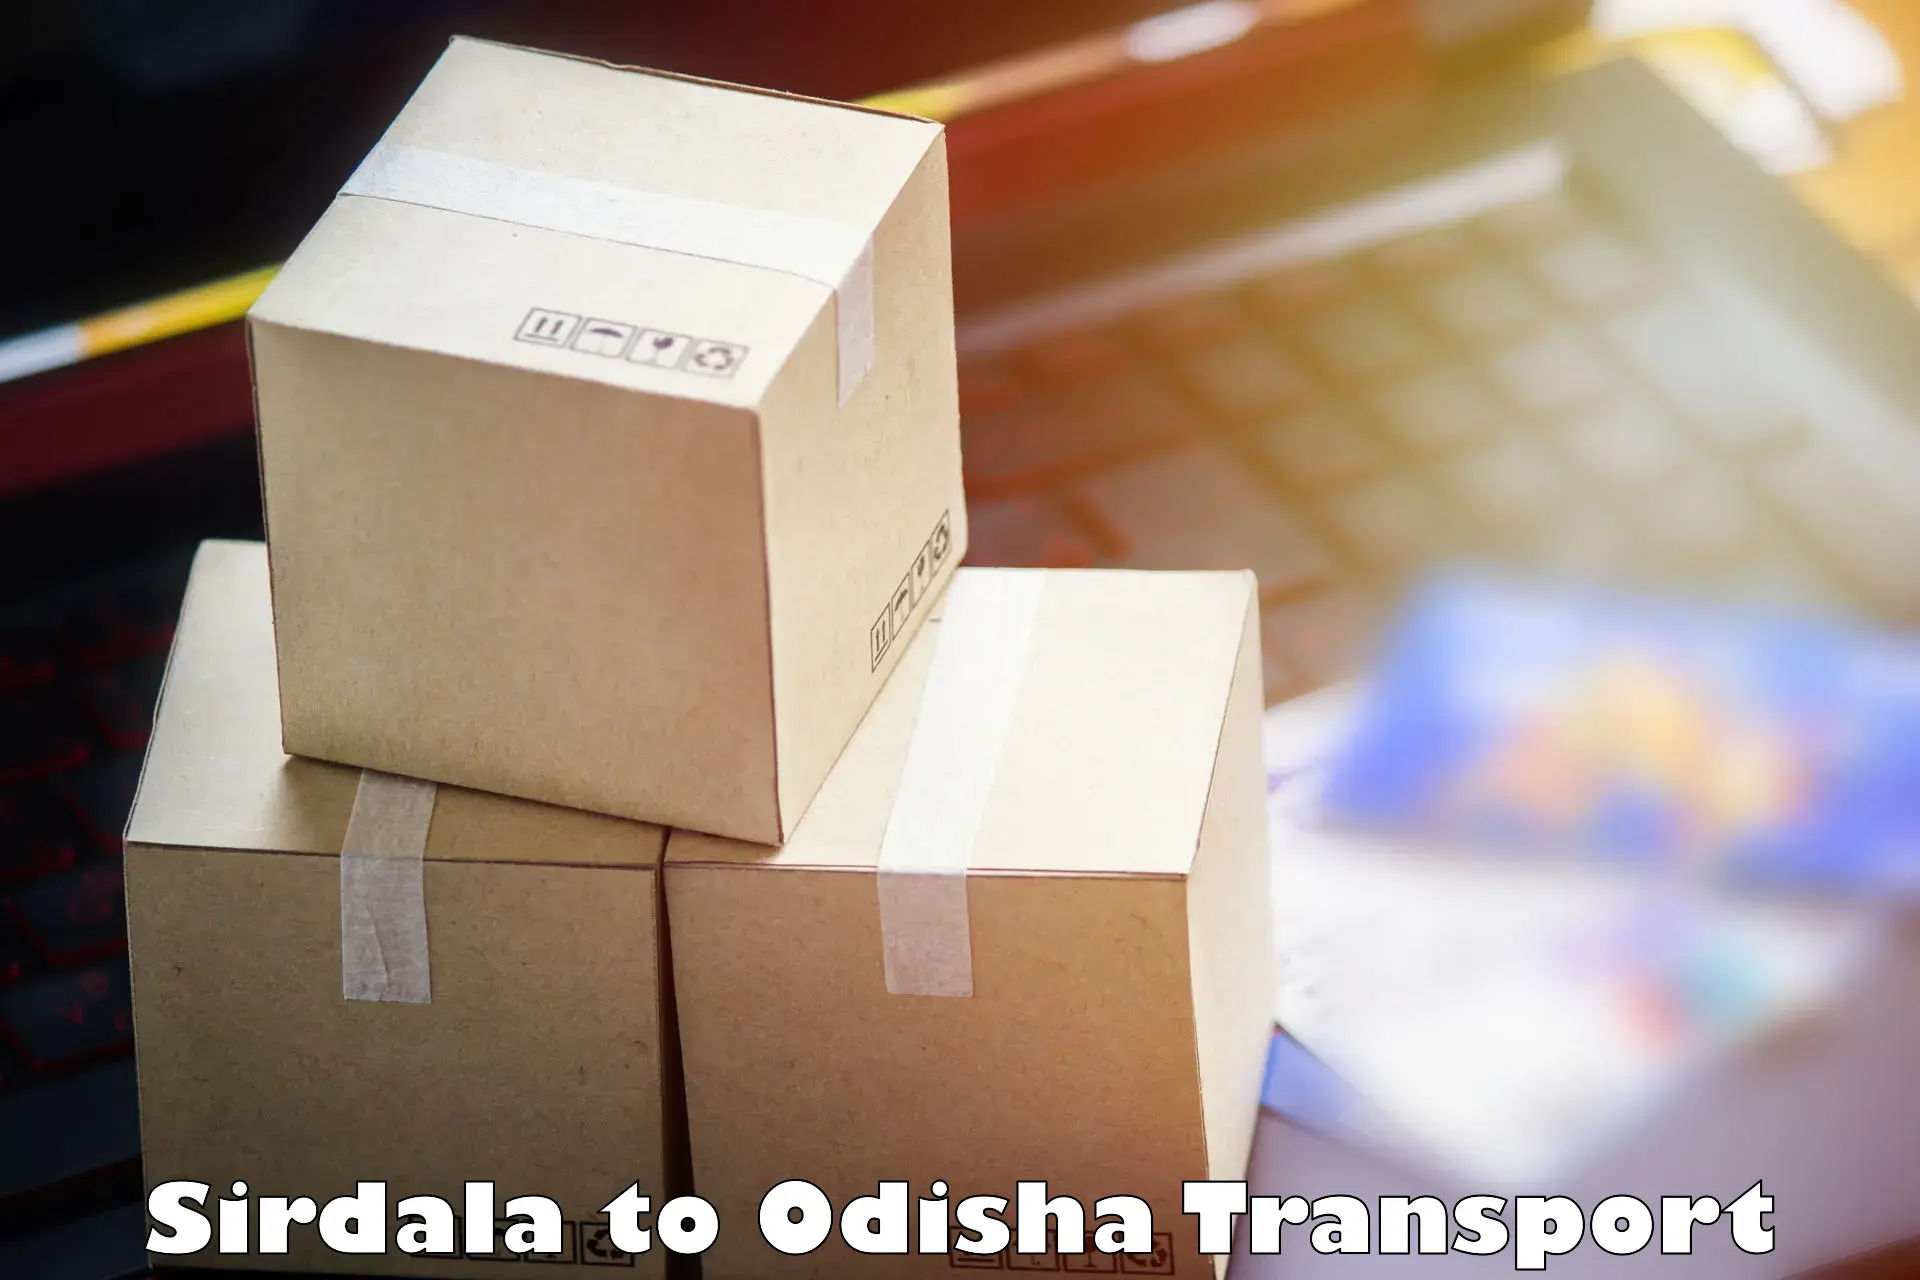 Furniture transport service Sirdala to Debagarh